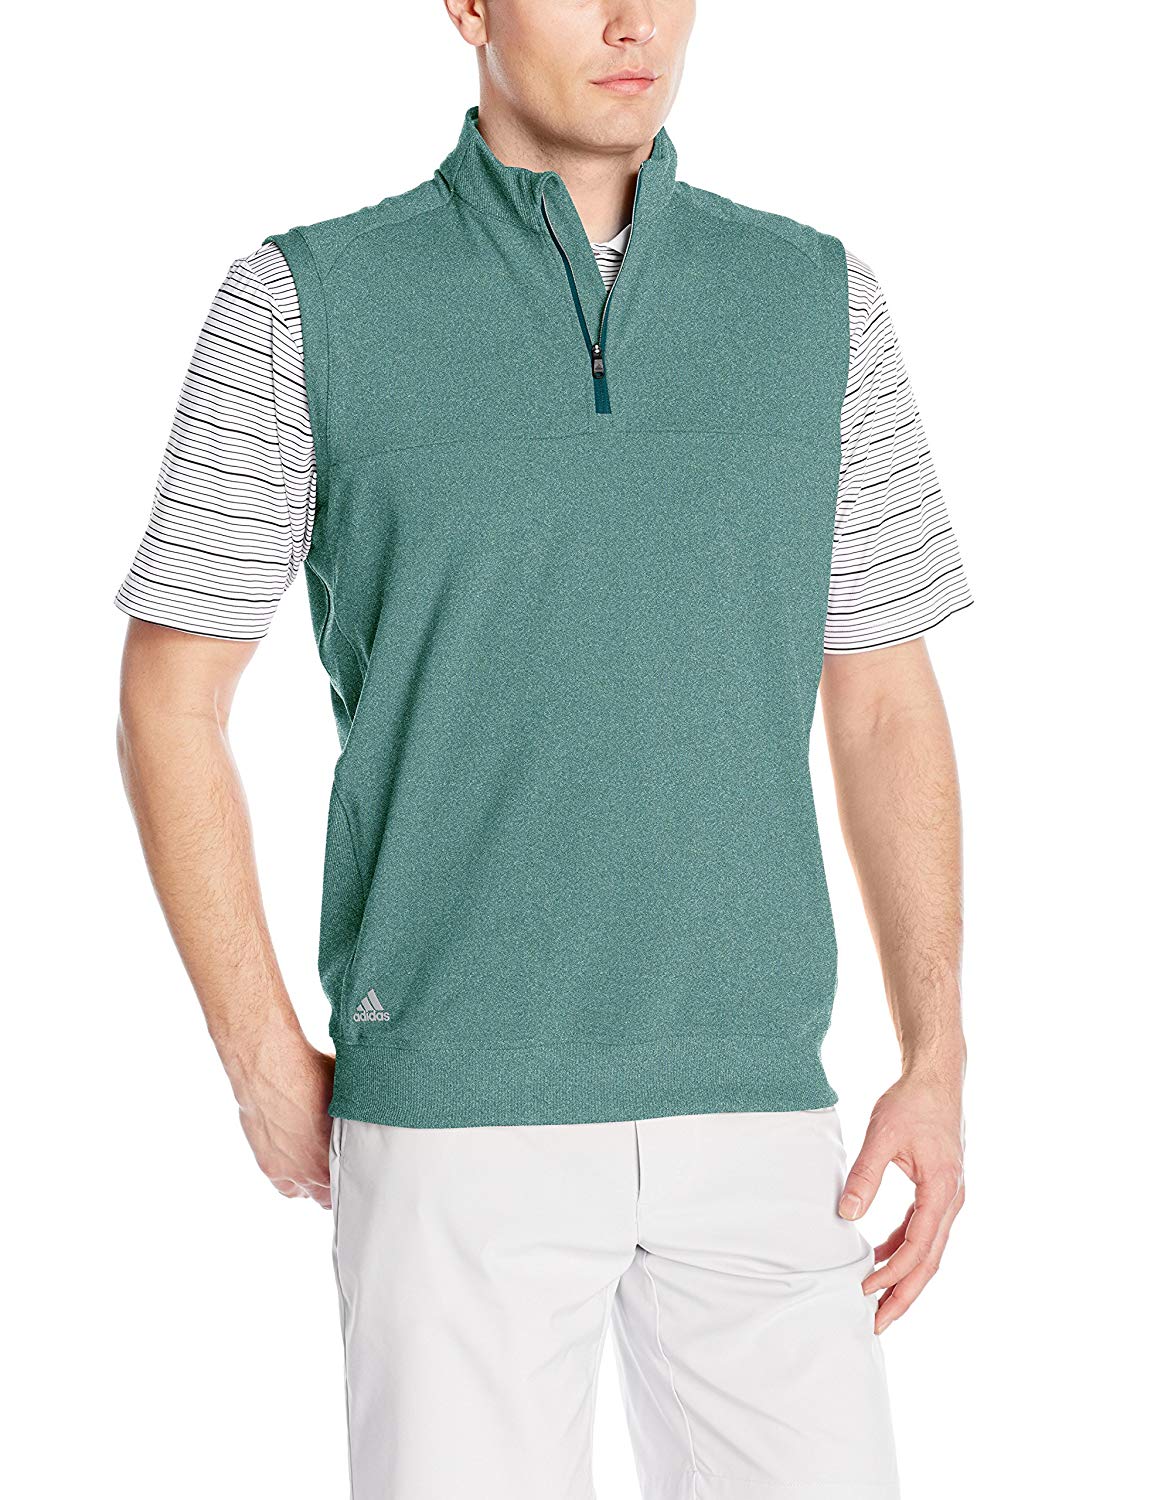 adidas golf vests